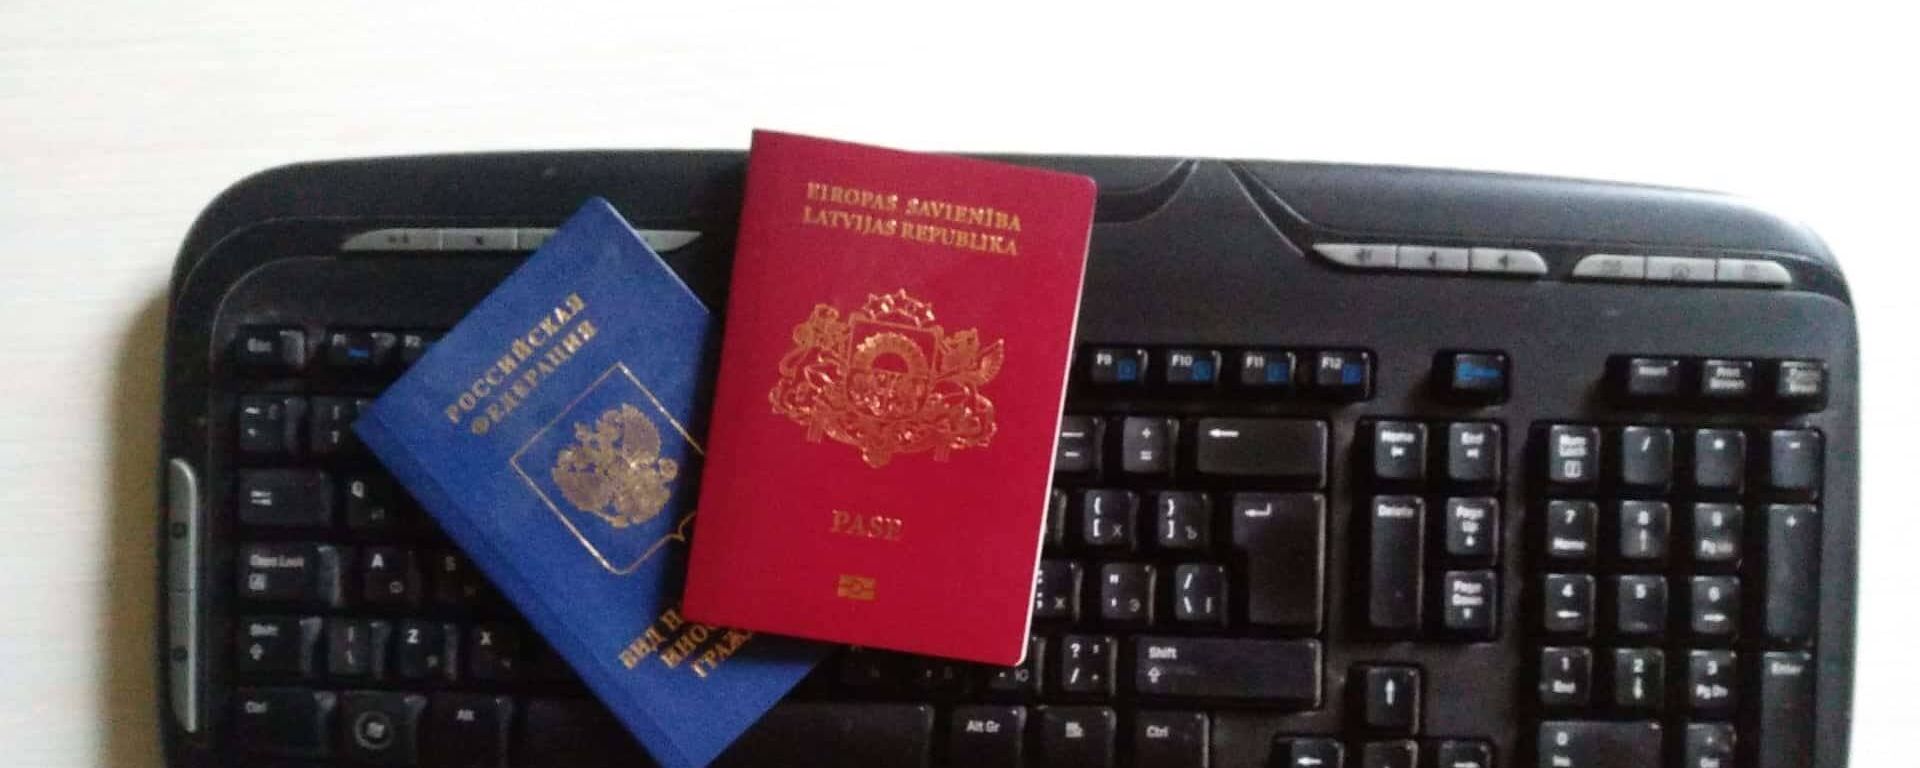 Паспорт гражданина Латвийской республики и вид на жительство иностранного гражданина РФ - Sputnik Латвия, 1920, 12.03.2021